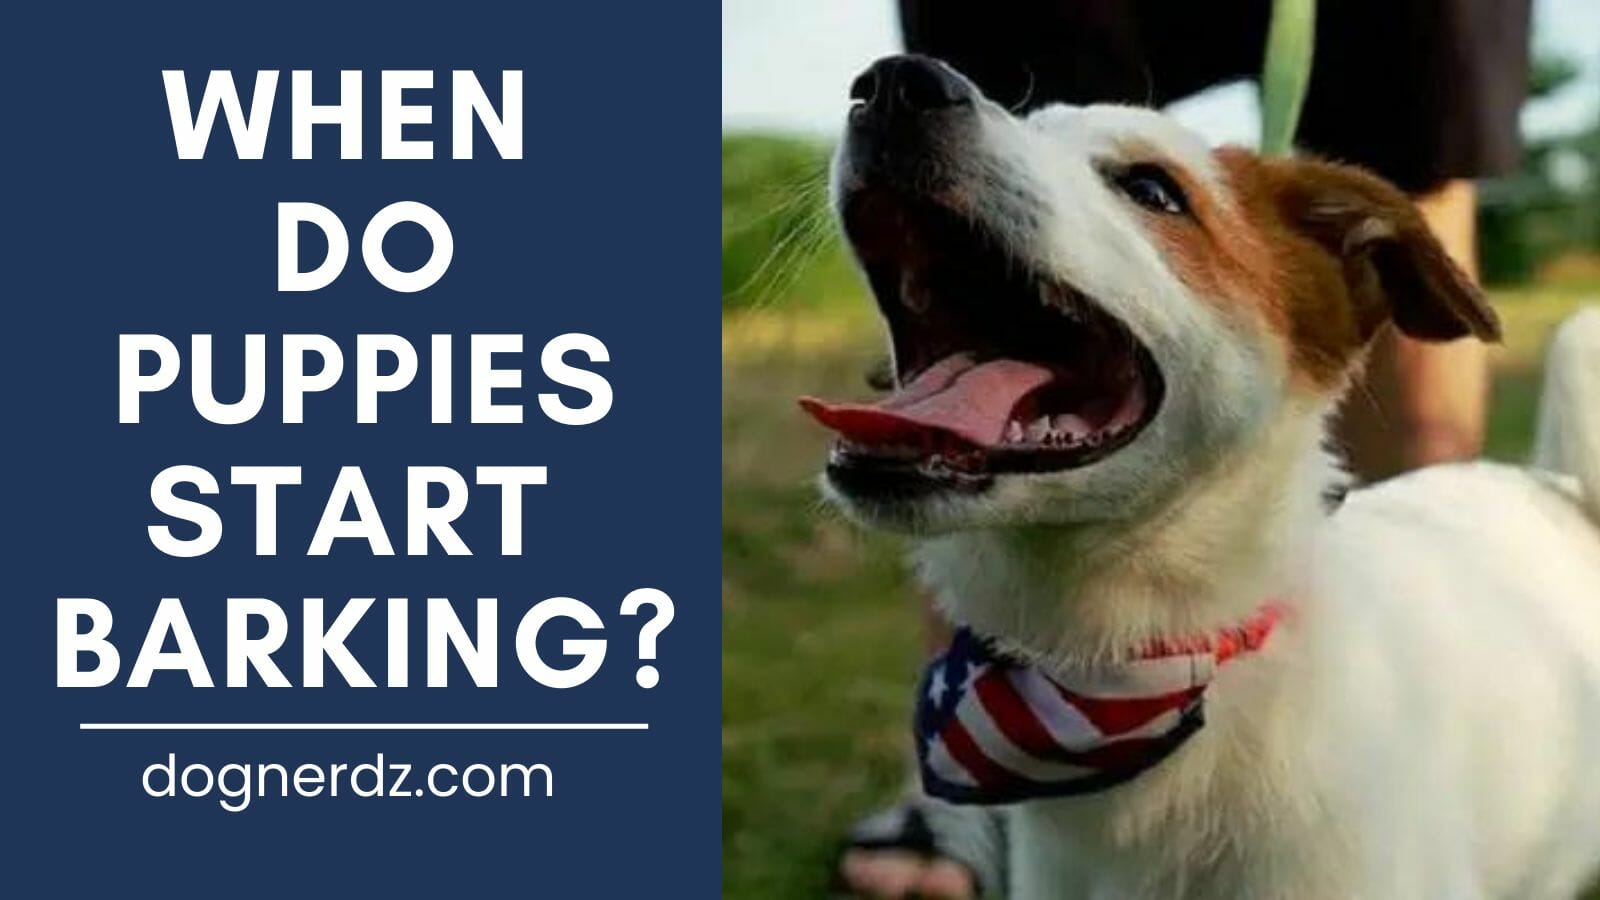 When Do Puppies Start Barking?